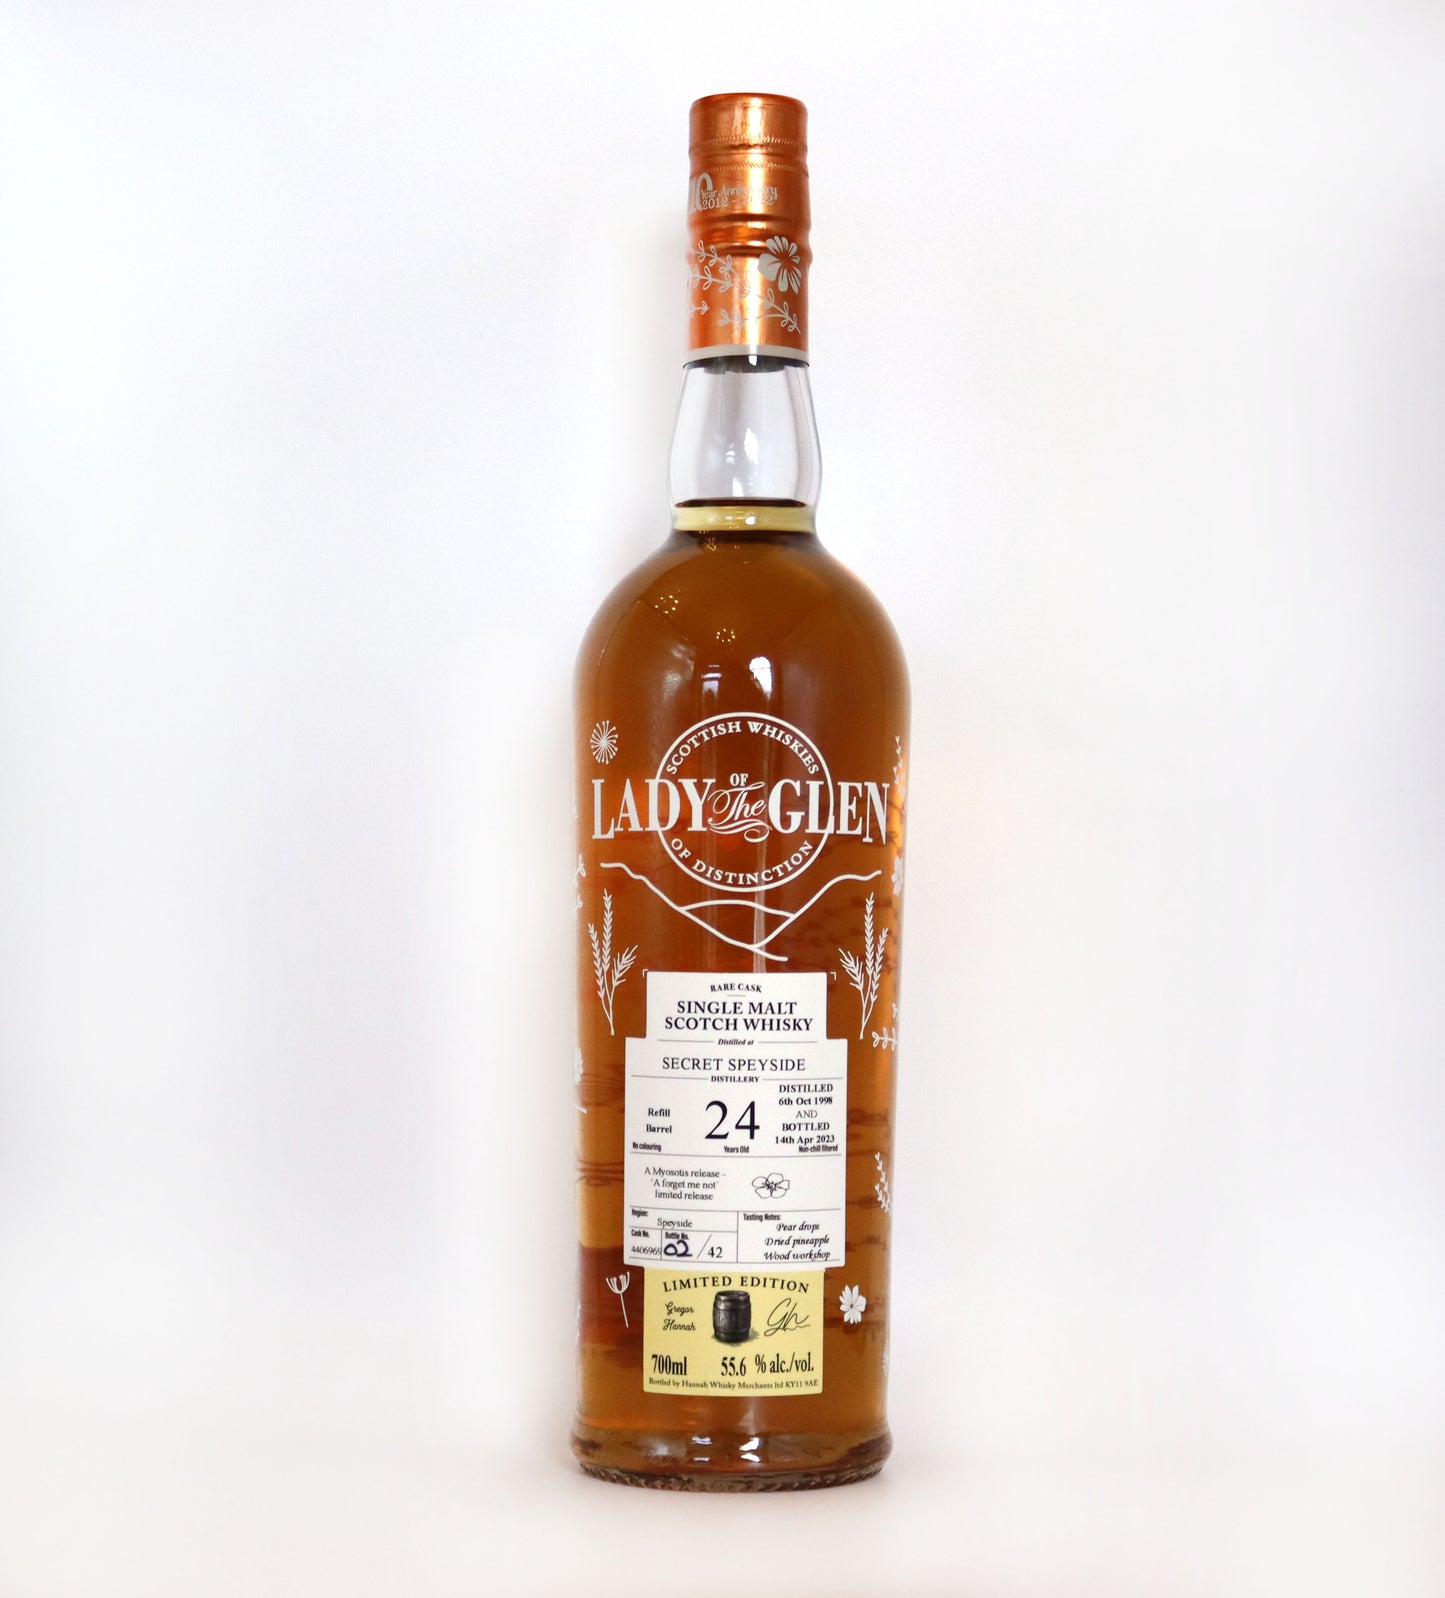 Lady of the Glen - Secret Speyside 24 years old - Single Malt Scotch Whisky